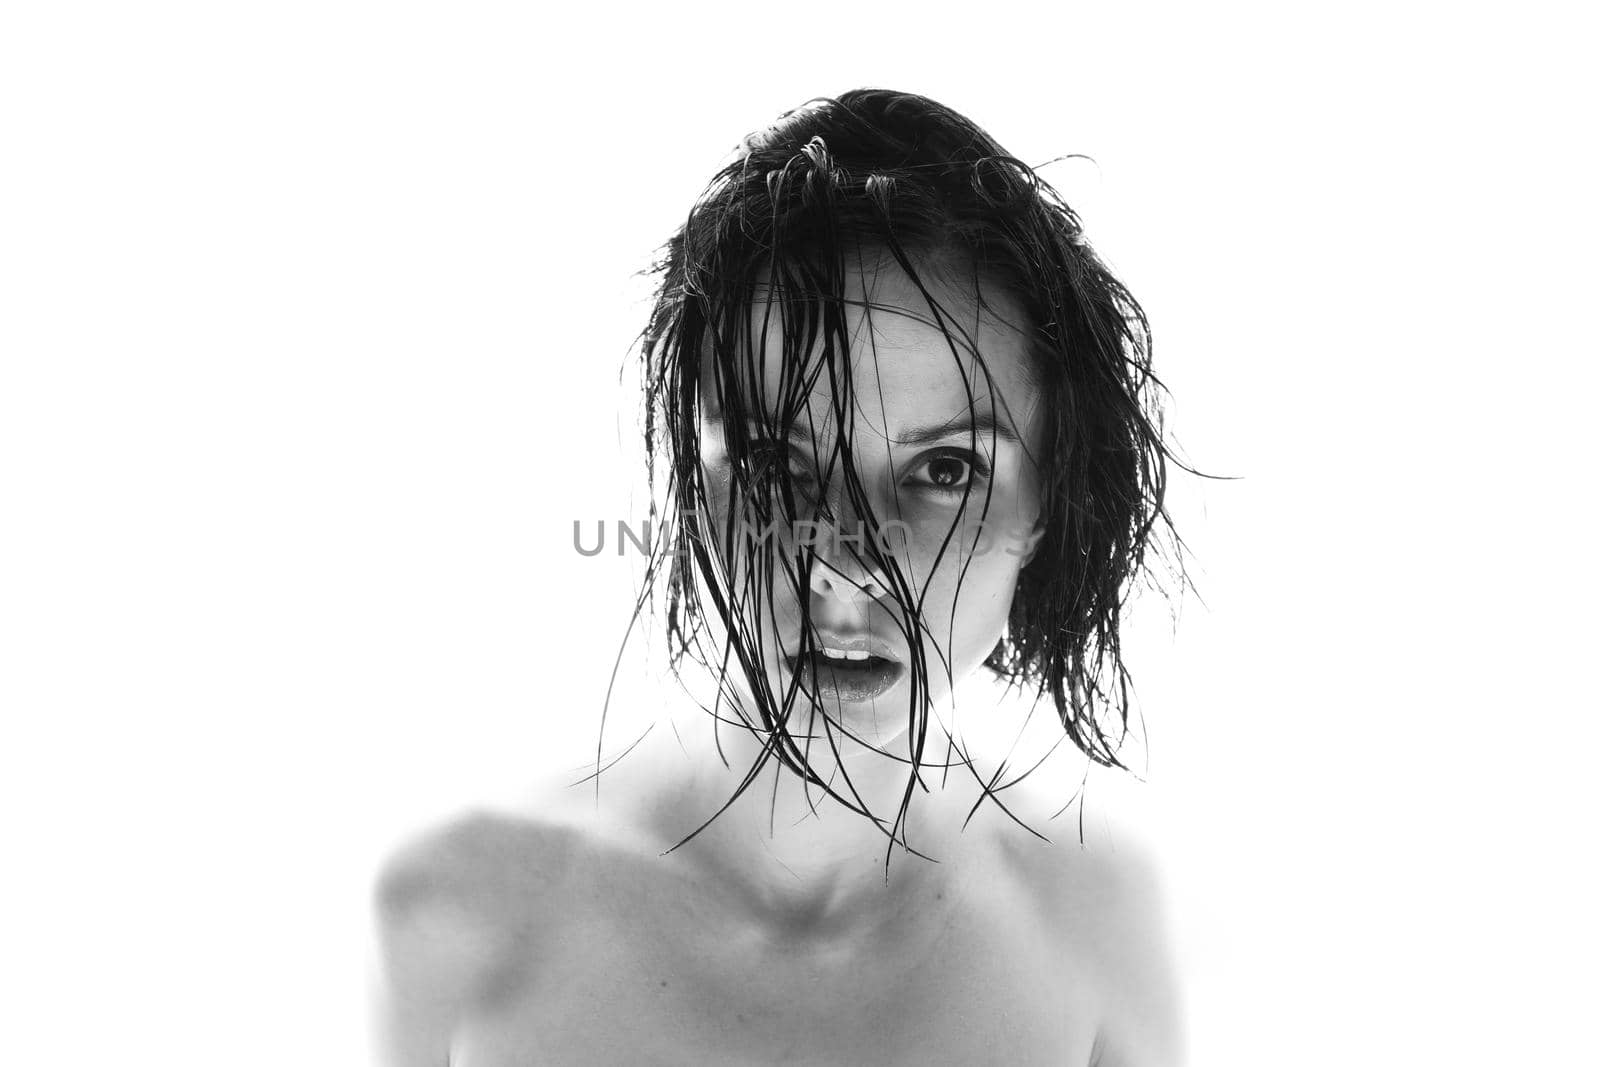 beautiful brunette woman white background, black and white photo by shilovskaya